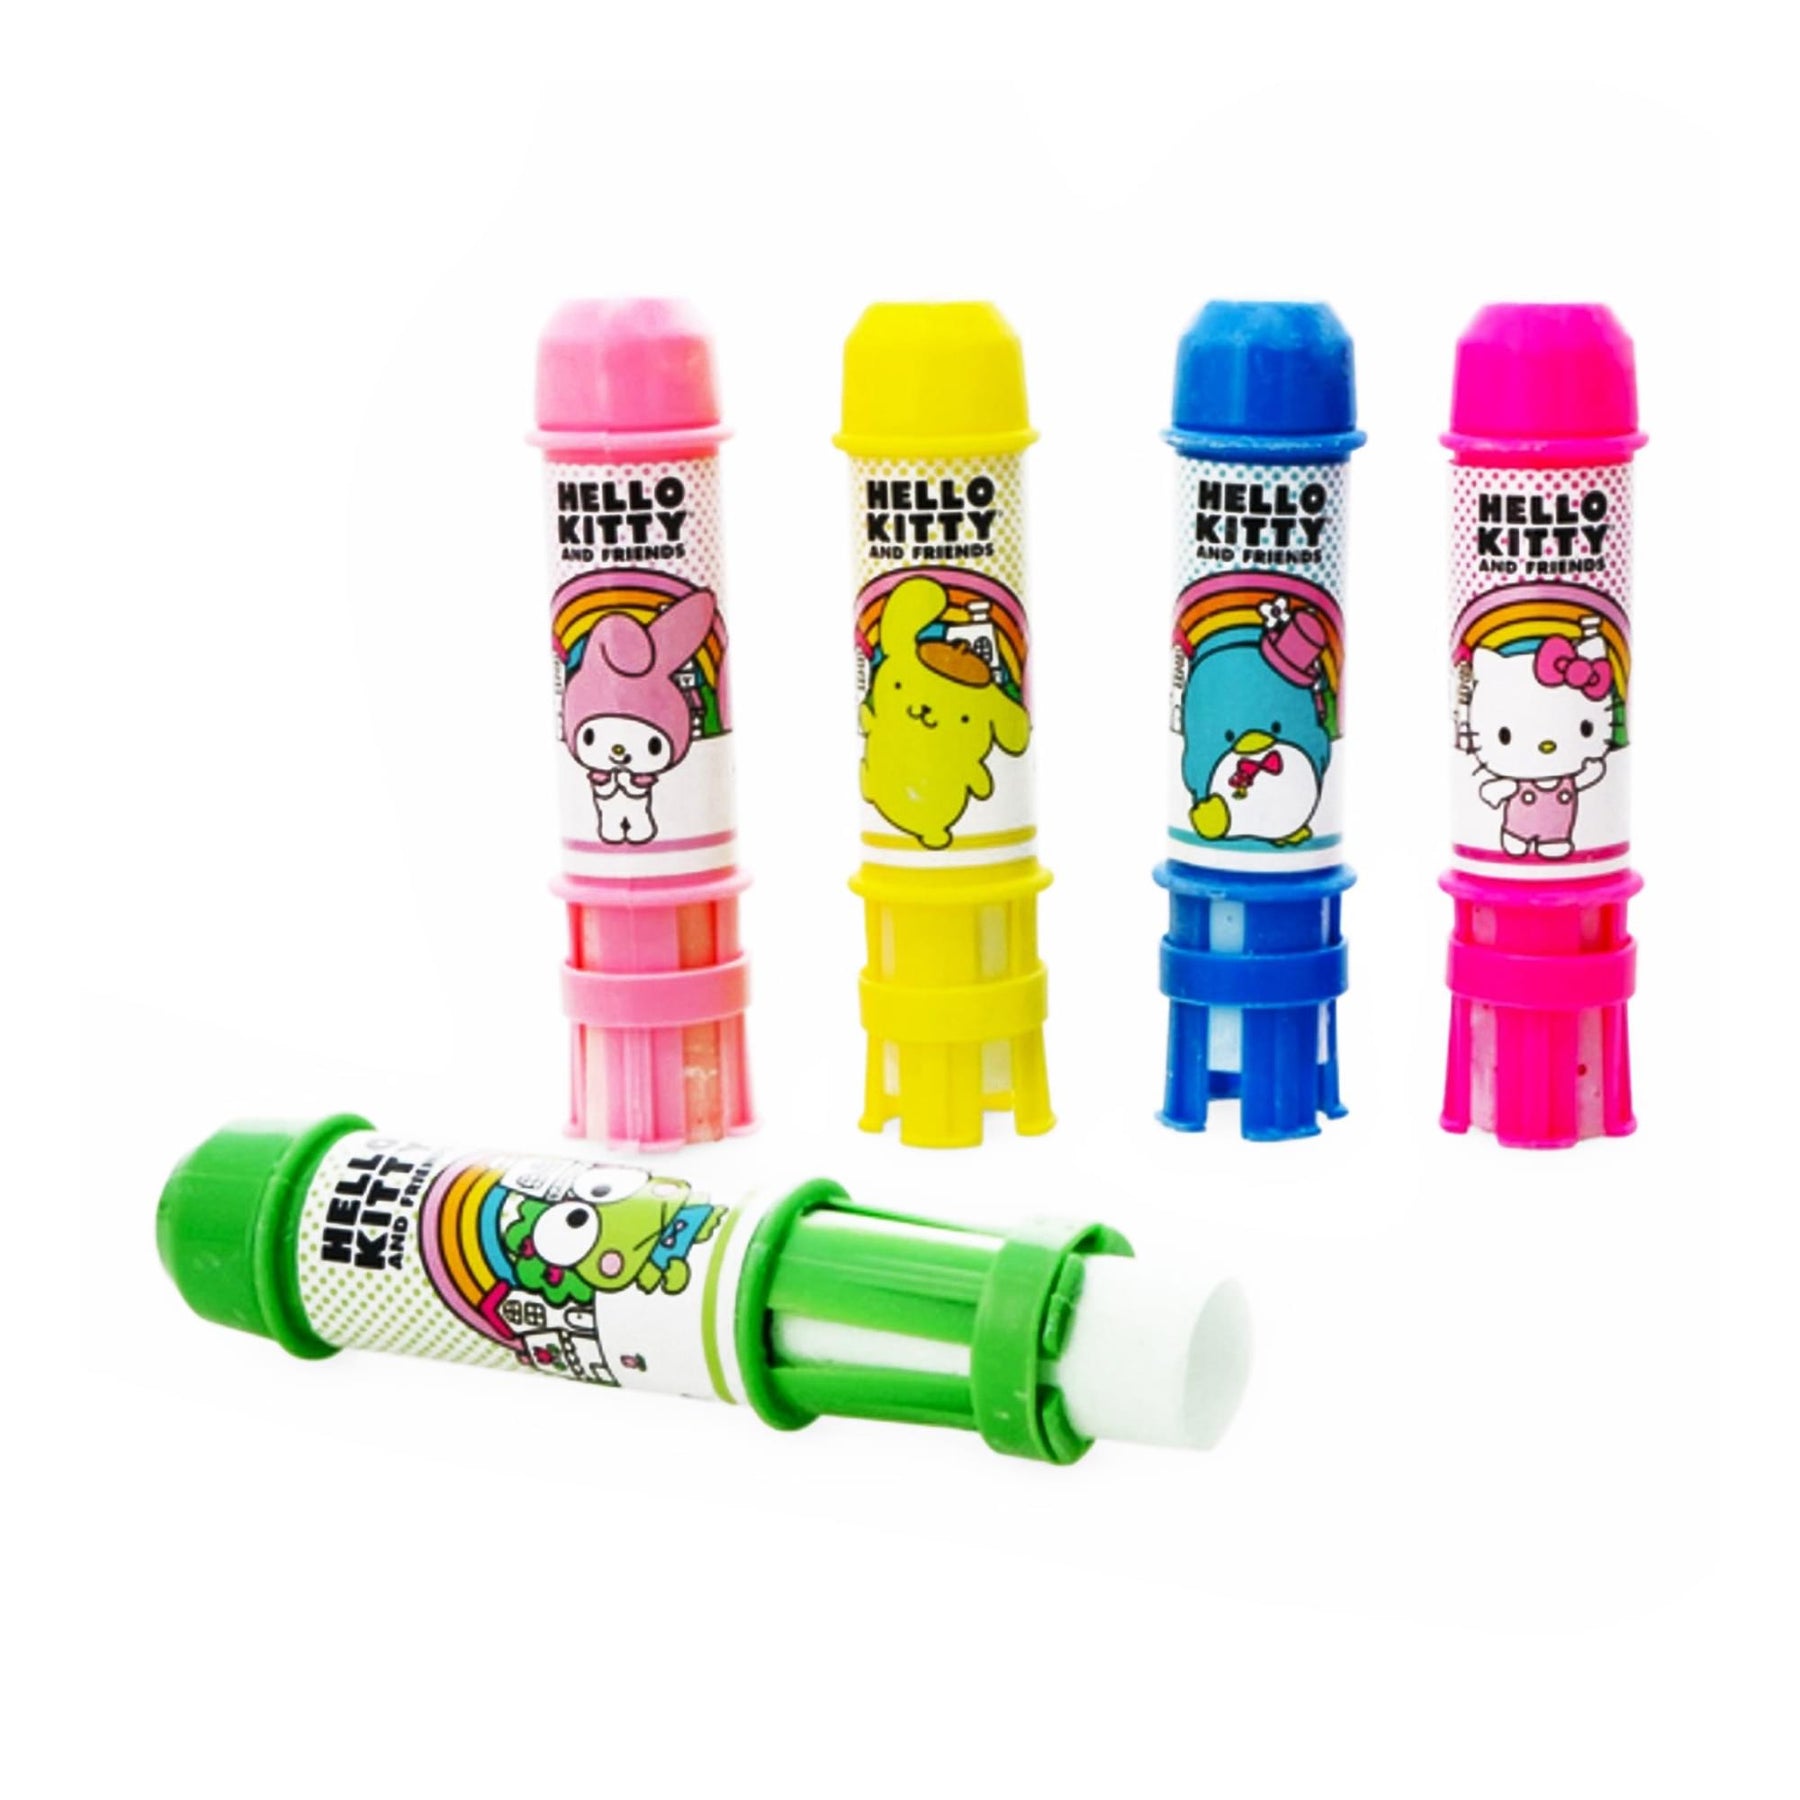 Hello Kitty 5-Piece Jumbo Chalk Set with Holders